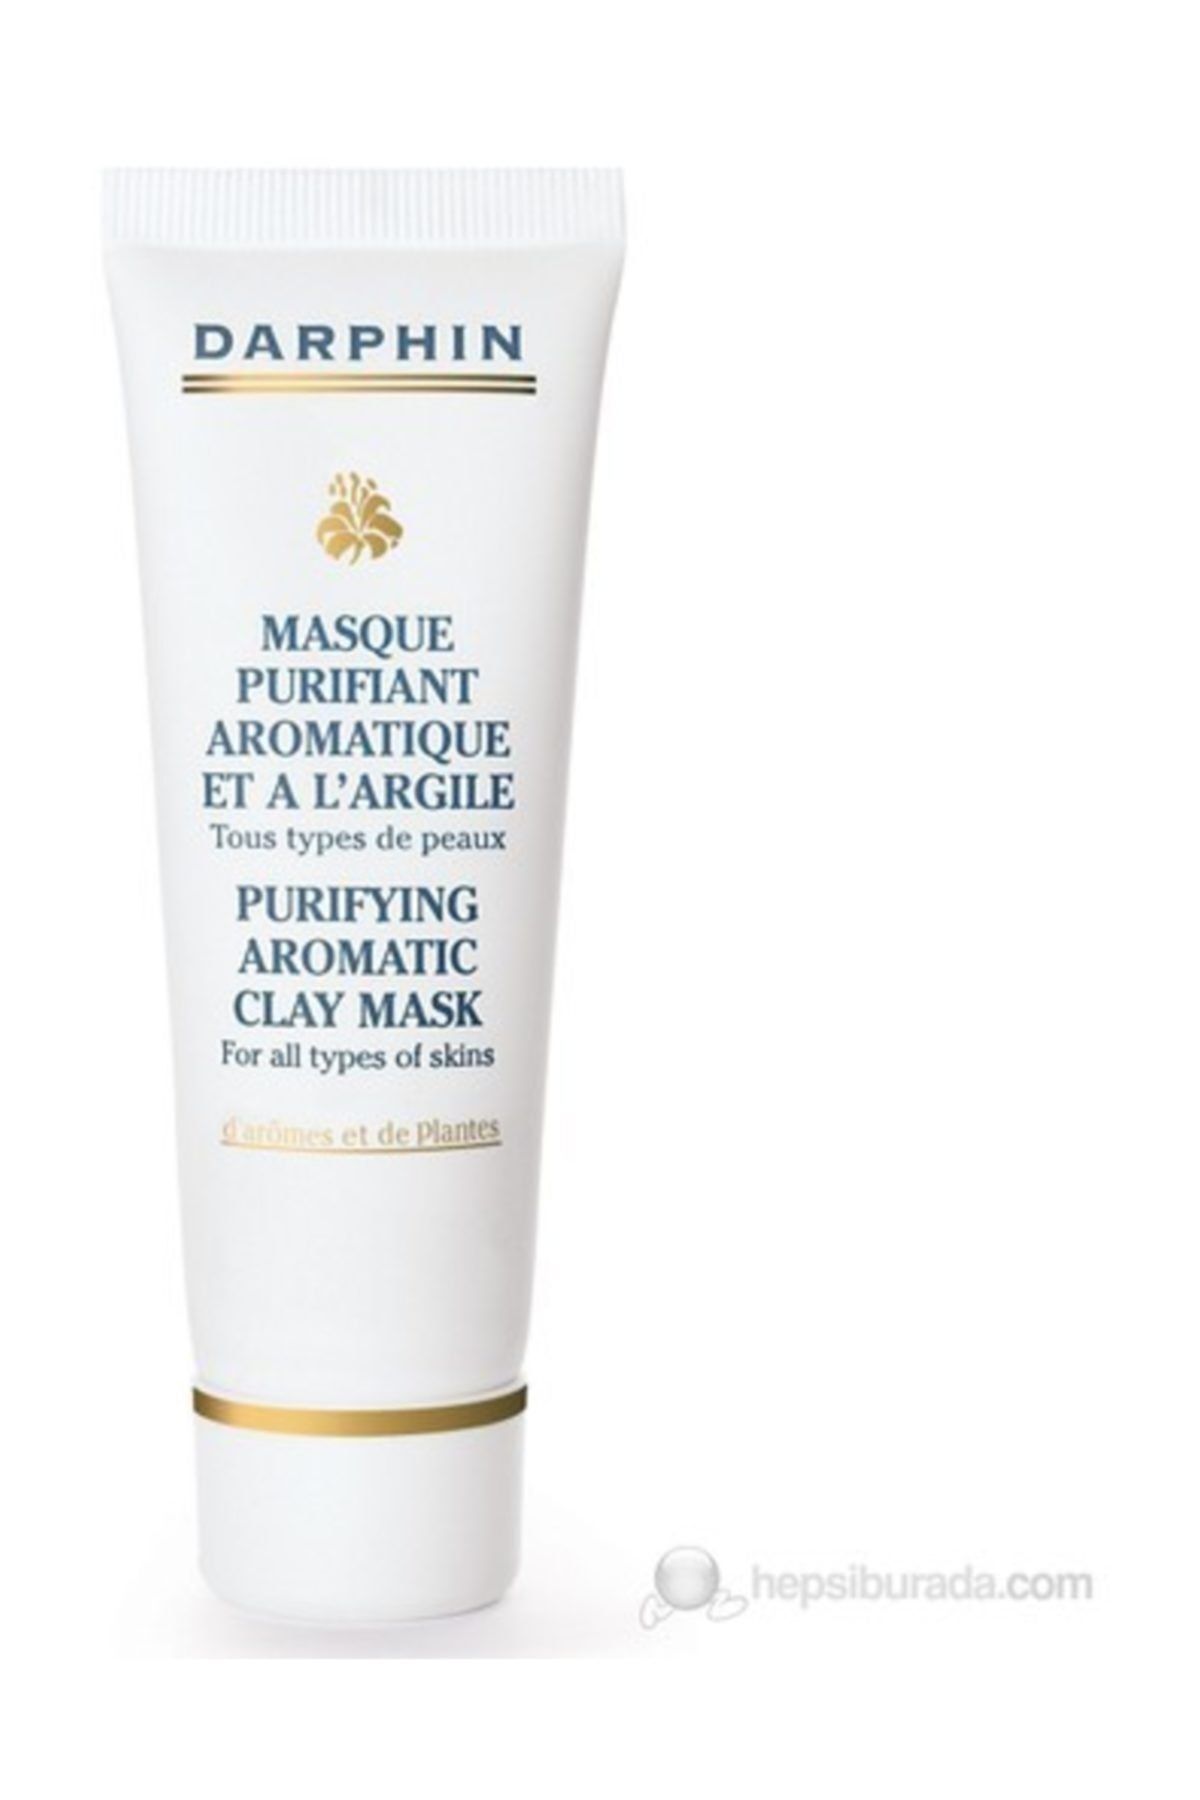 Darphin Paris Purifying Aromatic Clay Mask - Arındırıcı Ve Yatıştırıcı Maske